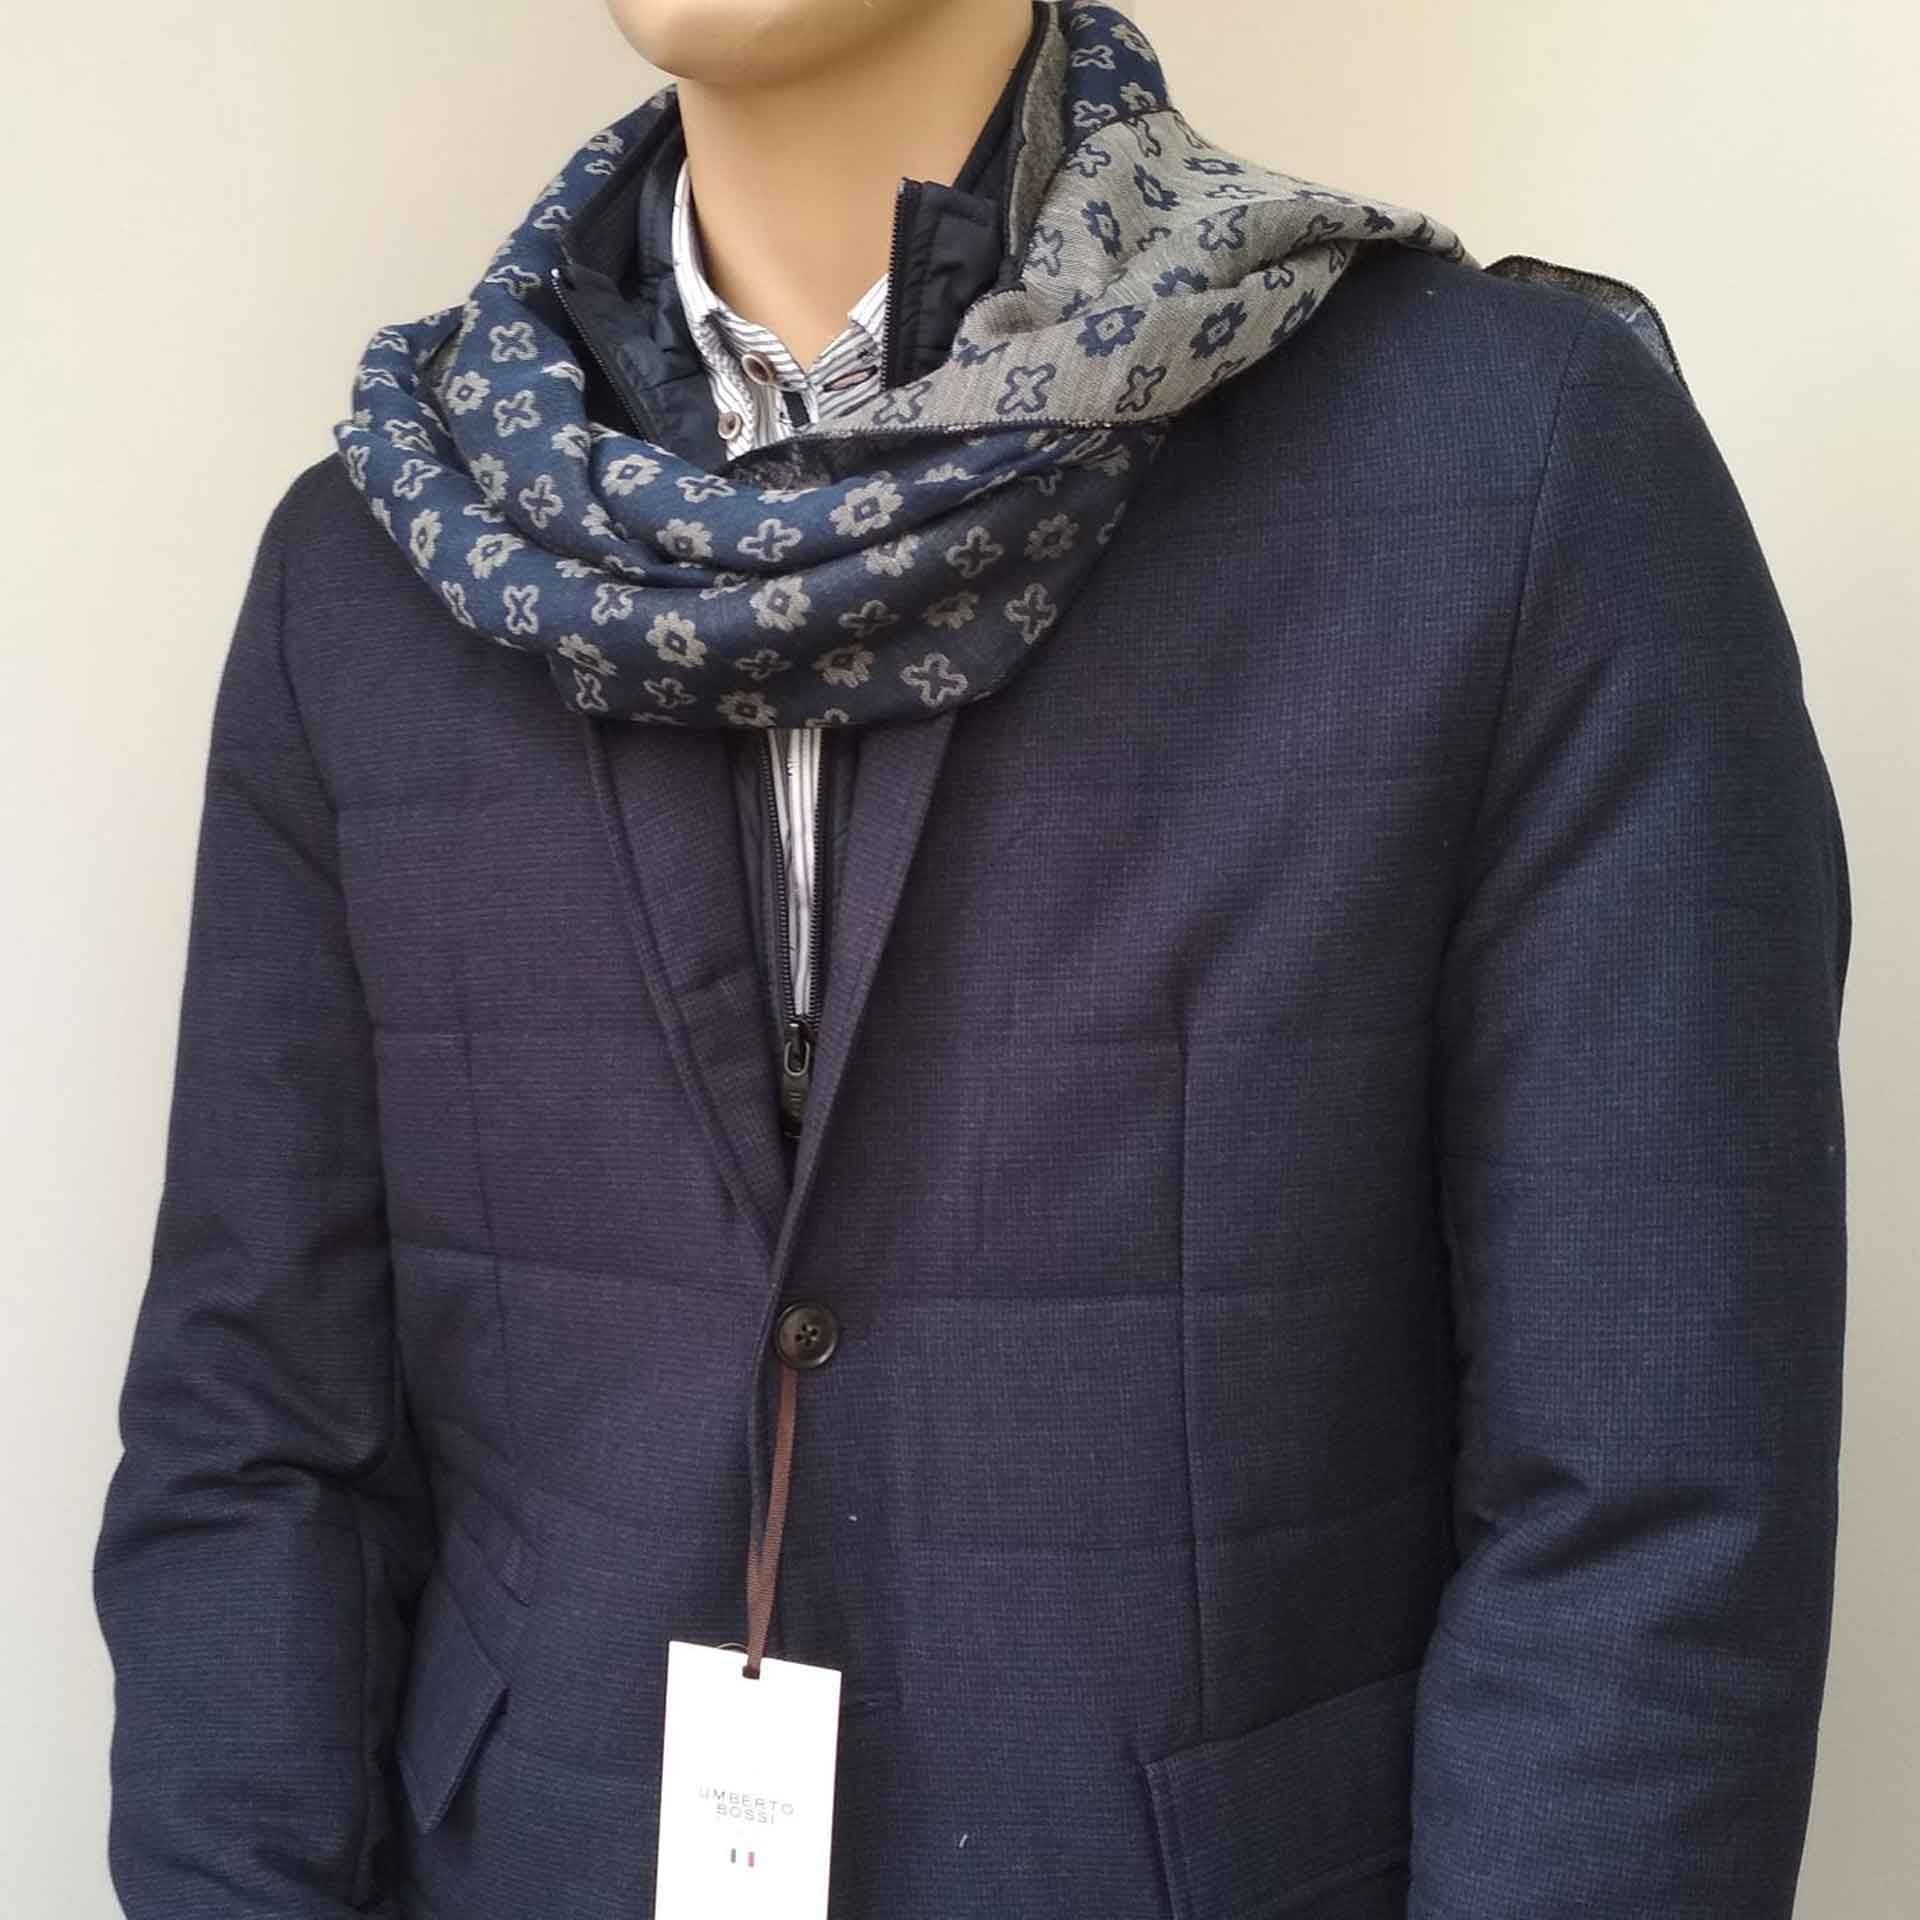 LV scarf  Moda, Moda masculina, Masculino